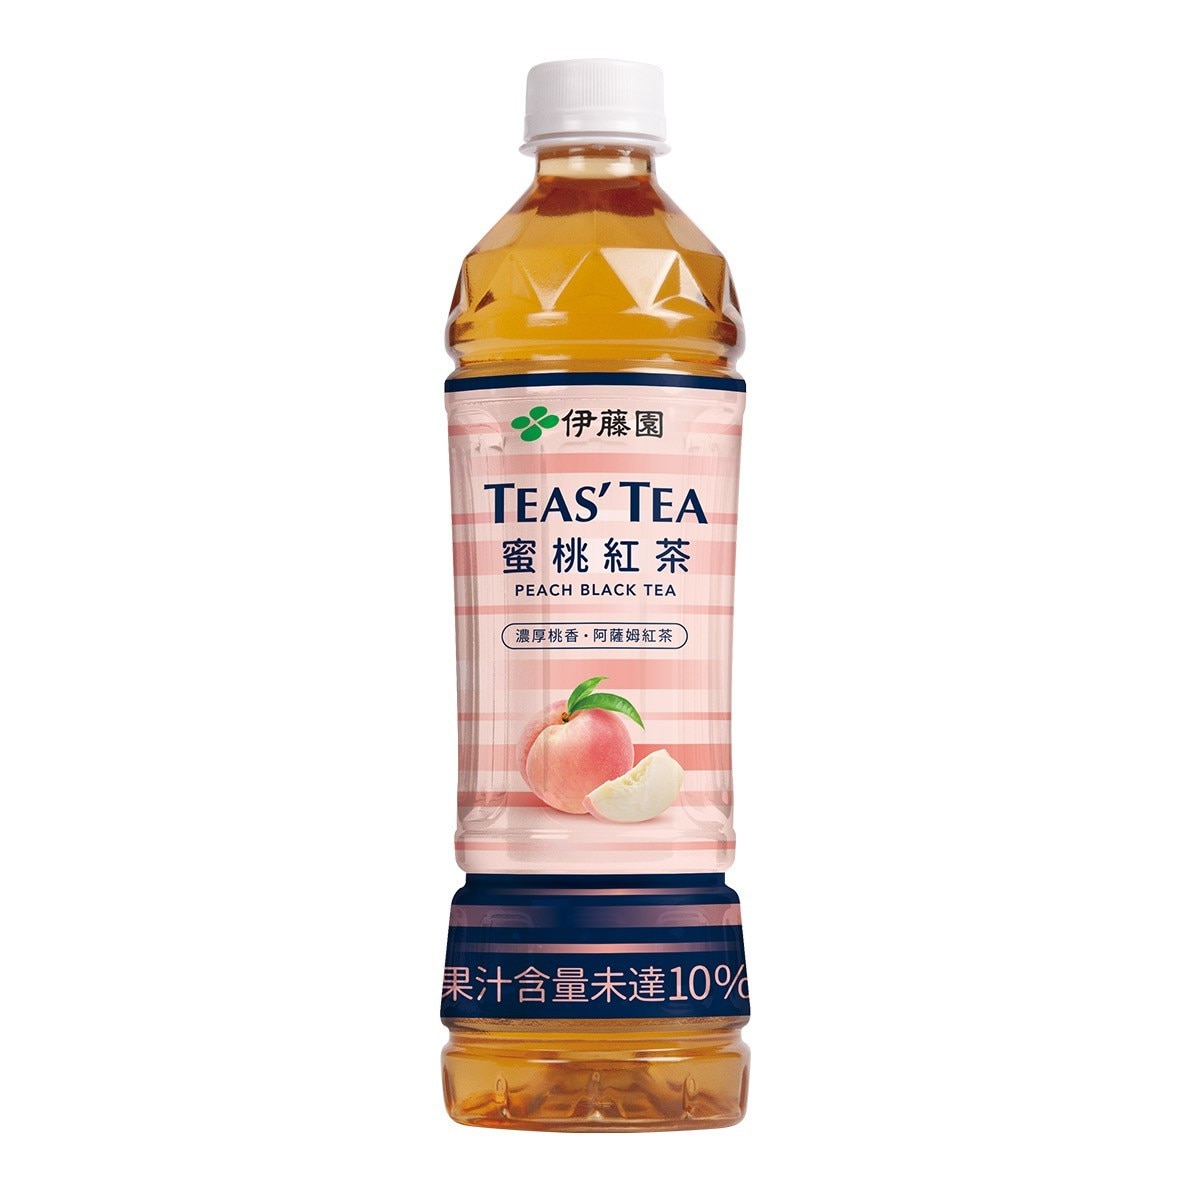 Ito-En 伊藤園 Teas' Tea 蜜桃紅茶 535毫升 X 24瓶